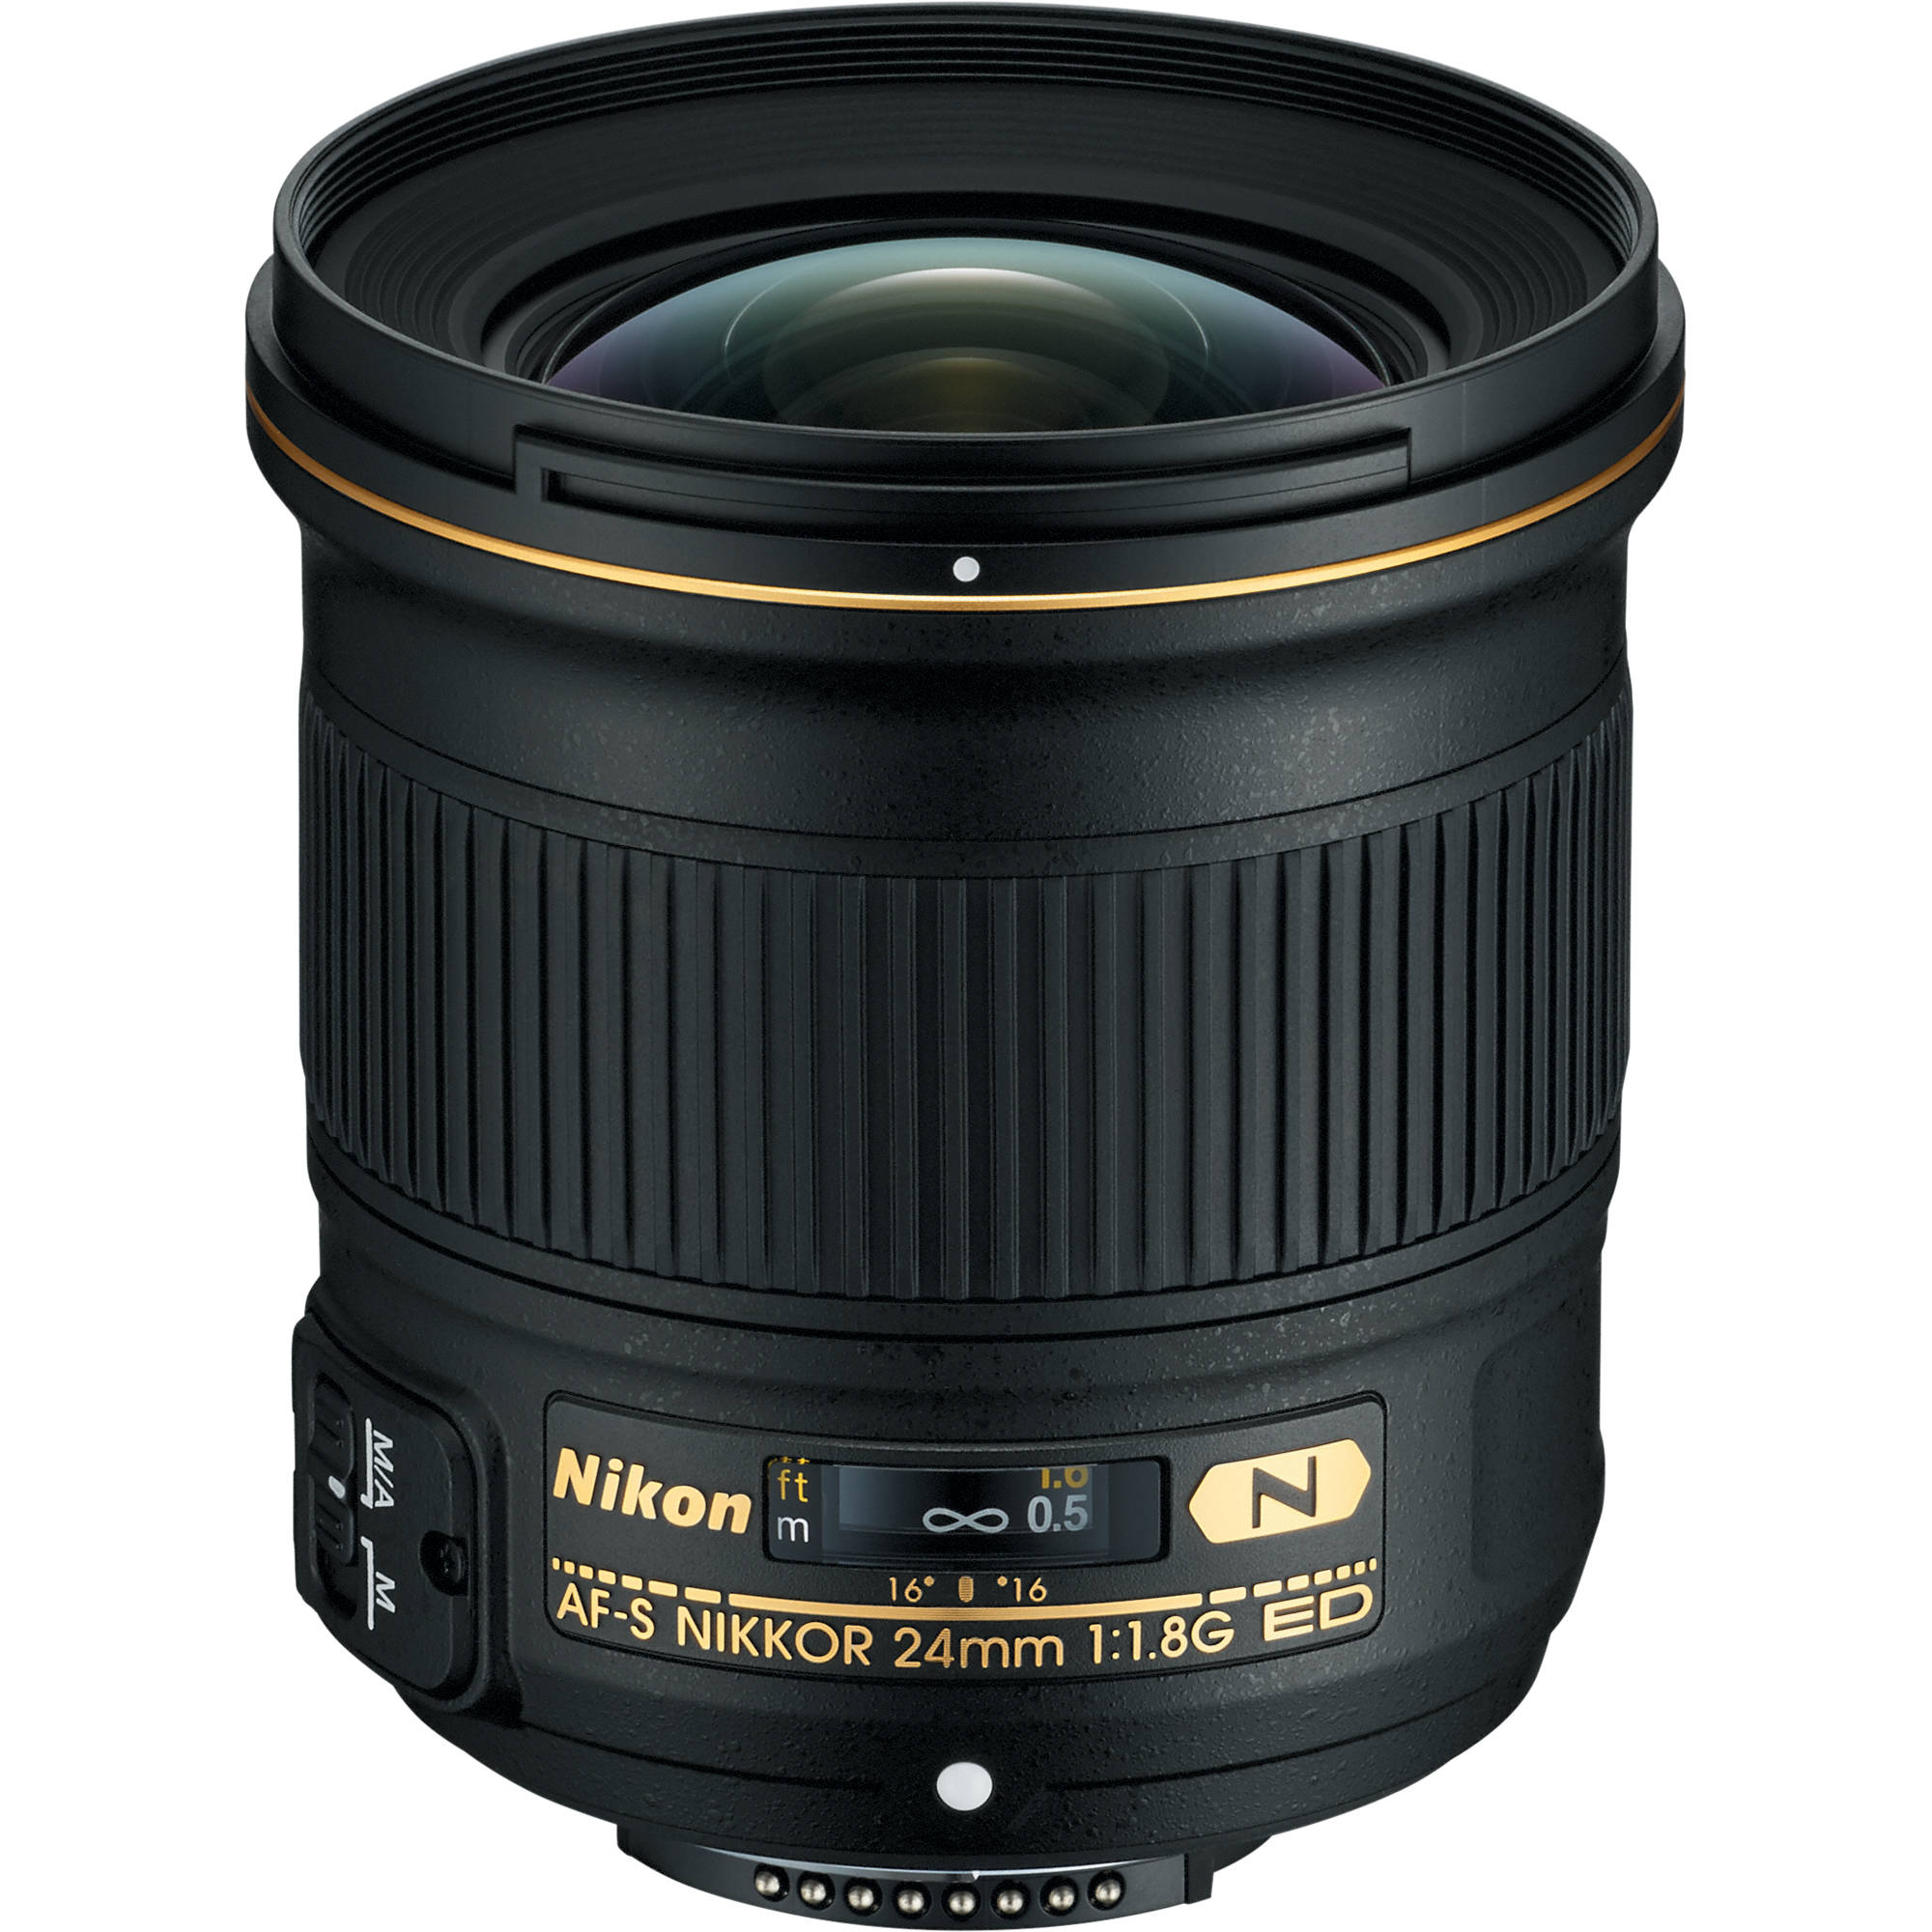 Nikon Af S Nikkor 24mm F 1 8g Ed Lens 057 B H Photo Video